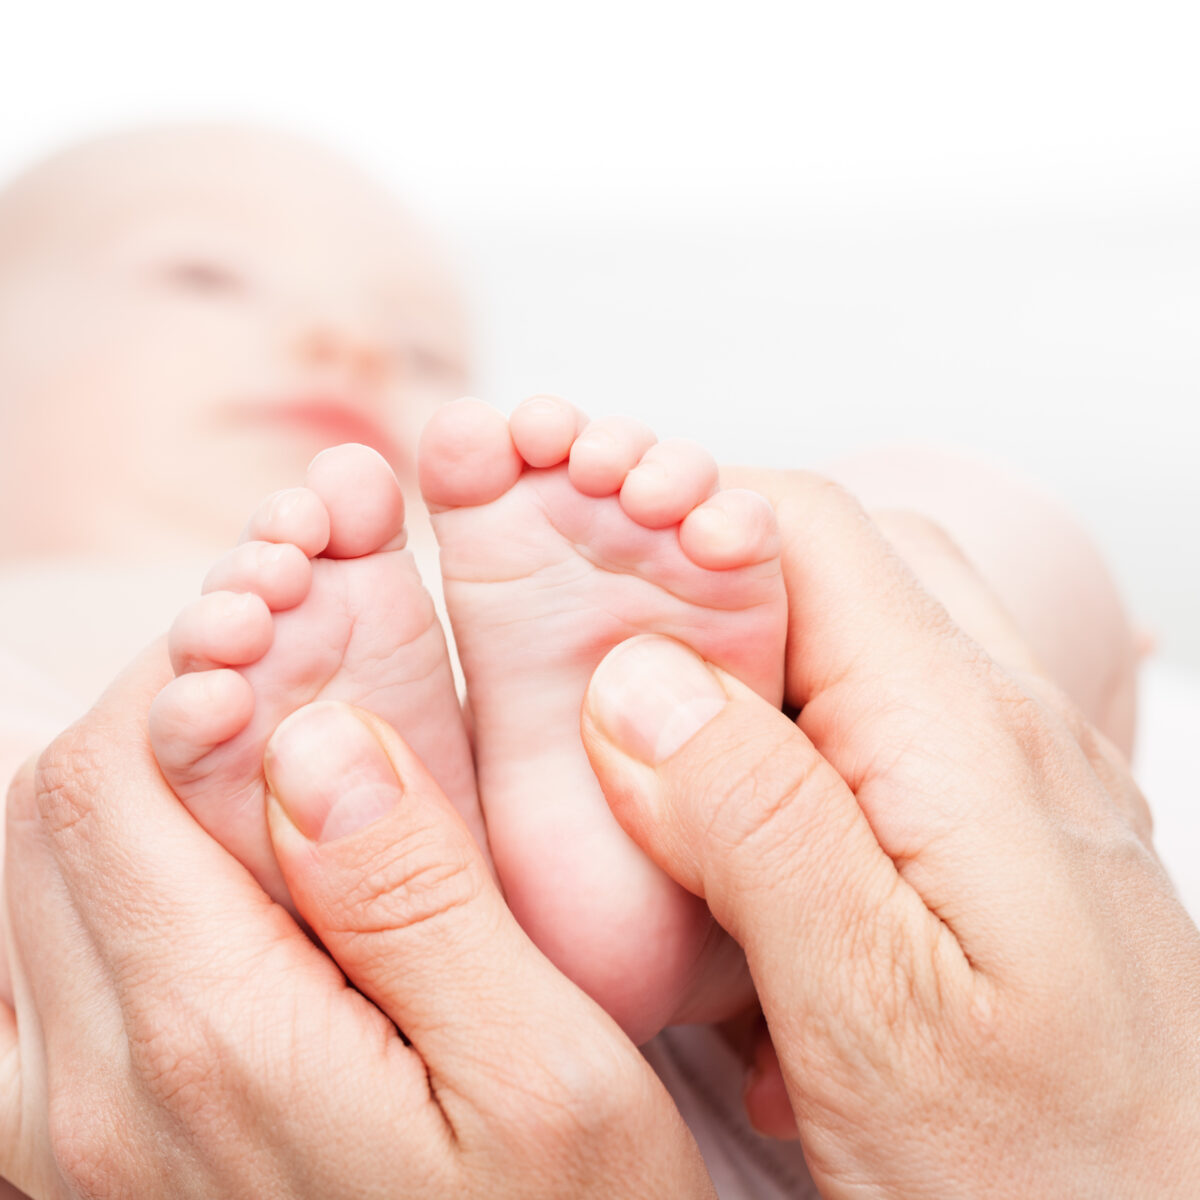 stopy noworodka w dłoniach dorosłej osoby